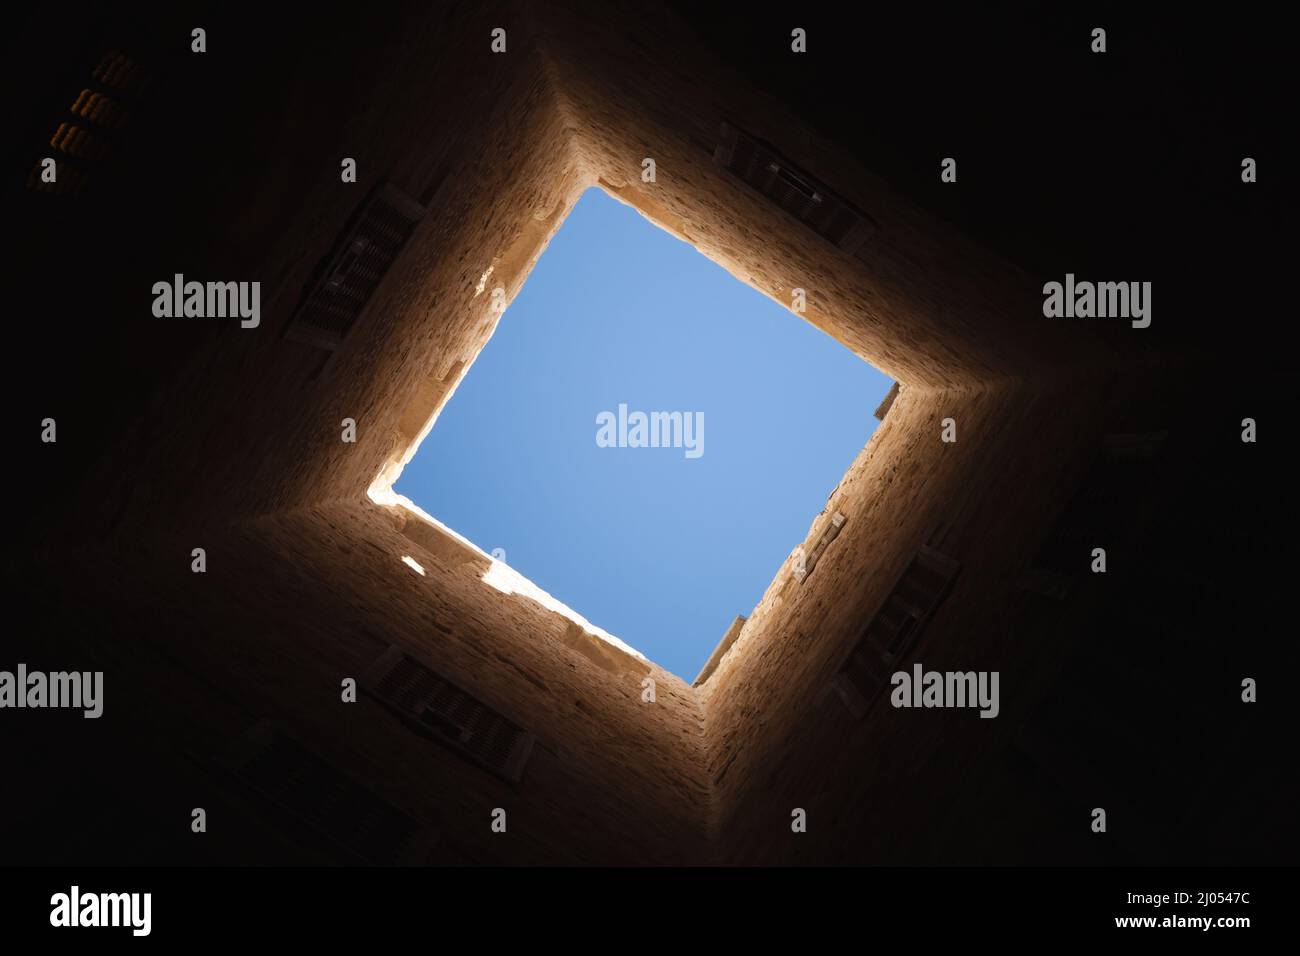 Finestra quadrata chiara all'interno della torre scura, astratto foto di sfondo architettonico scuro Foto Stock